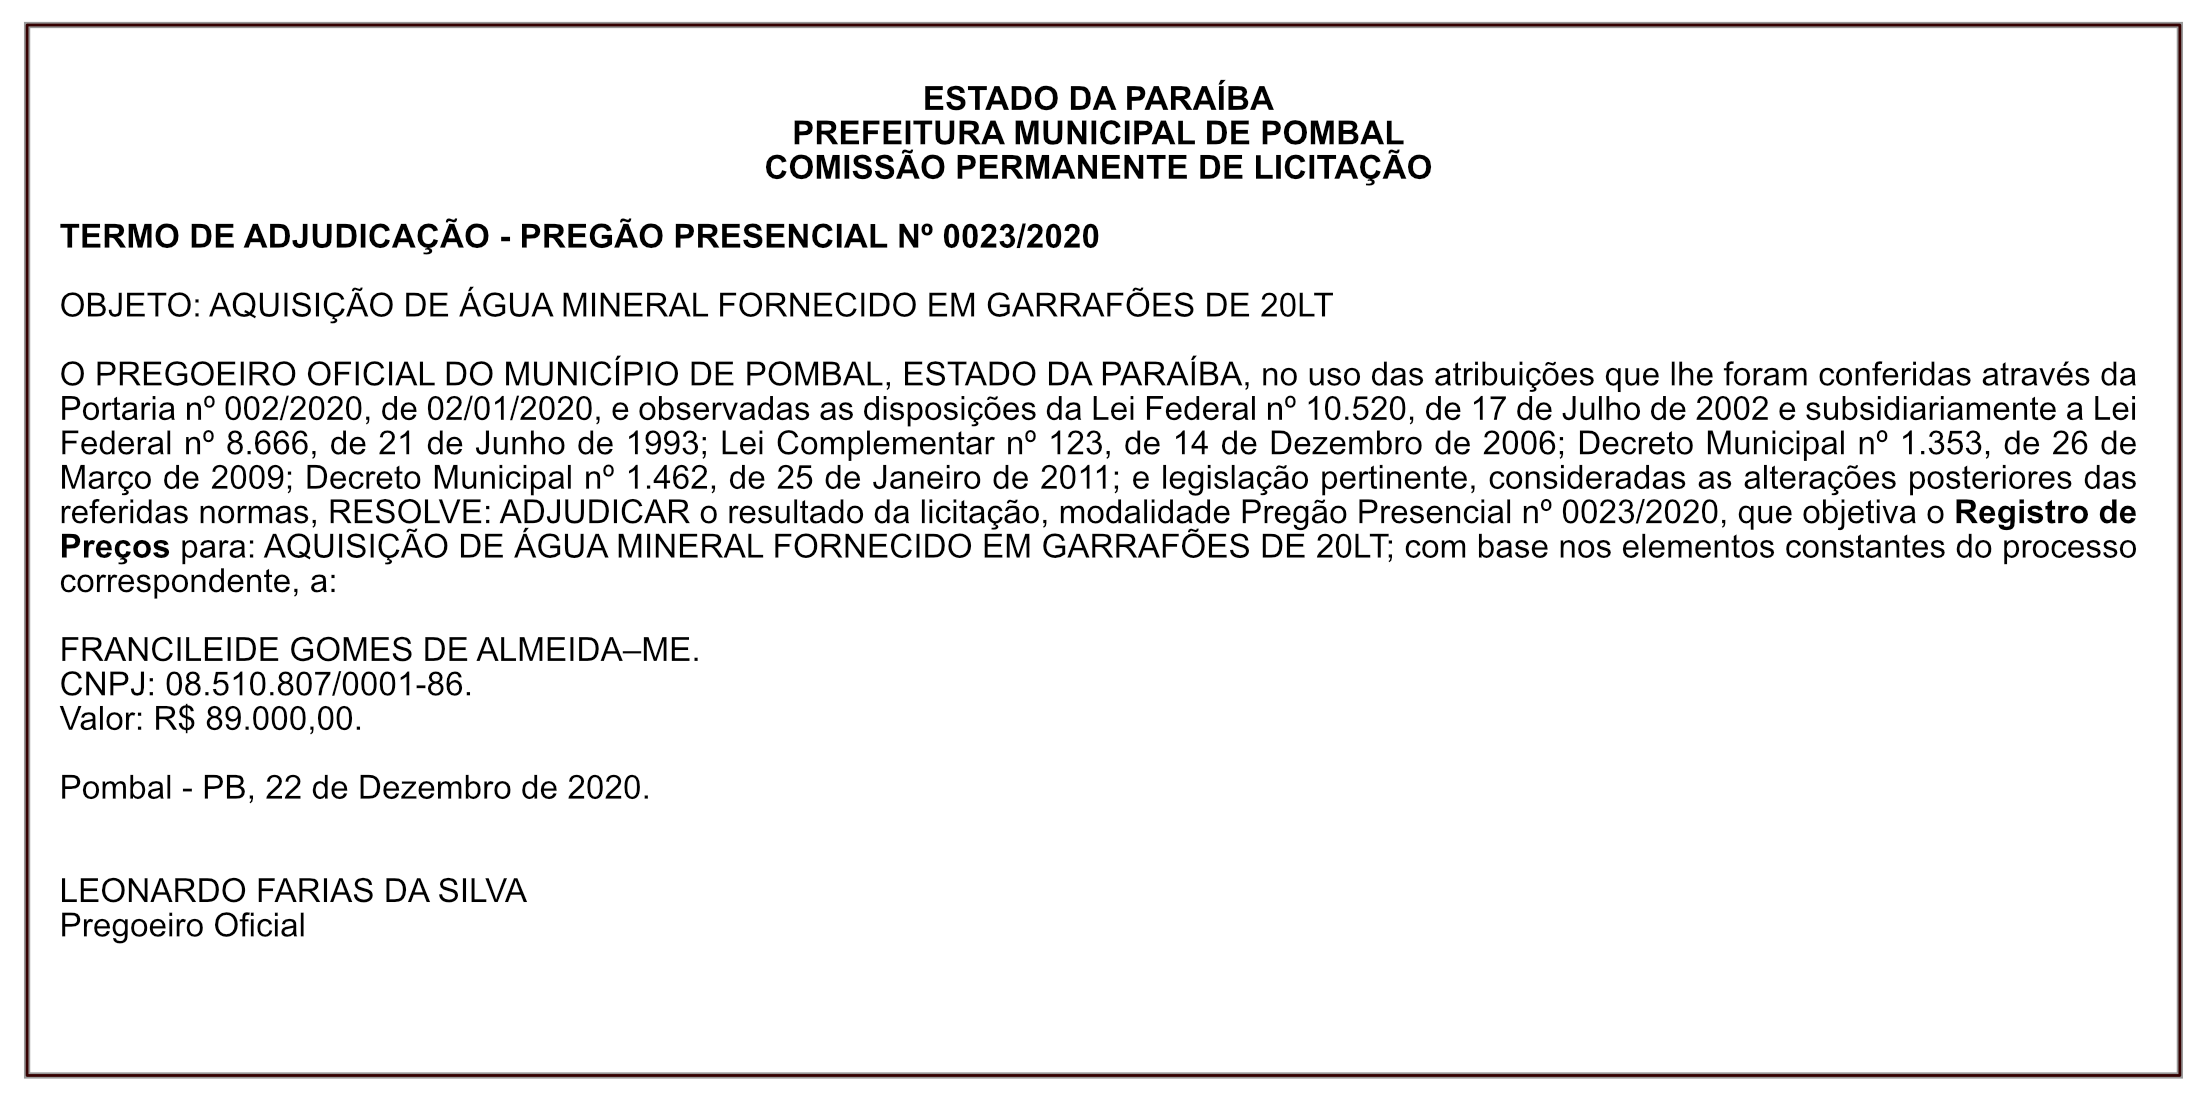 PREFEITURA MUNICIPAL DE POMBAL – TERMO DE ADJUDICAÇÃO – PREGÃO PRESENCIAL Nº 0023/2020